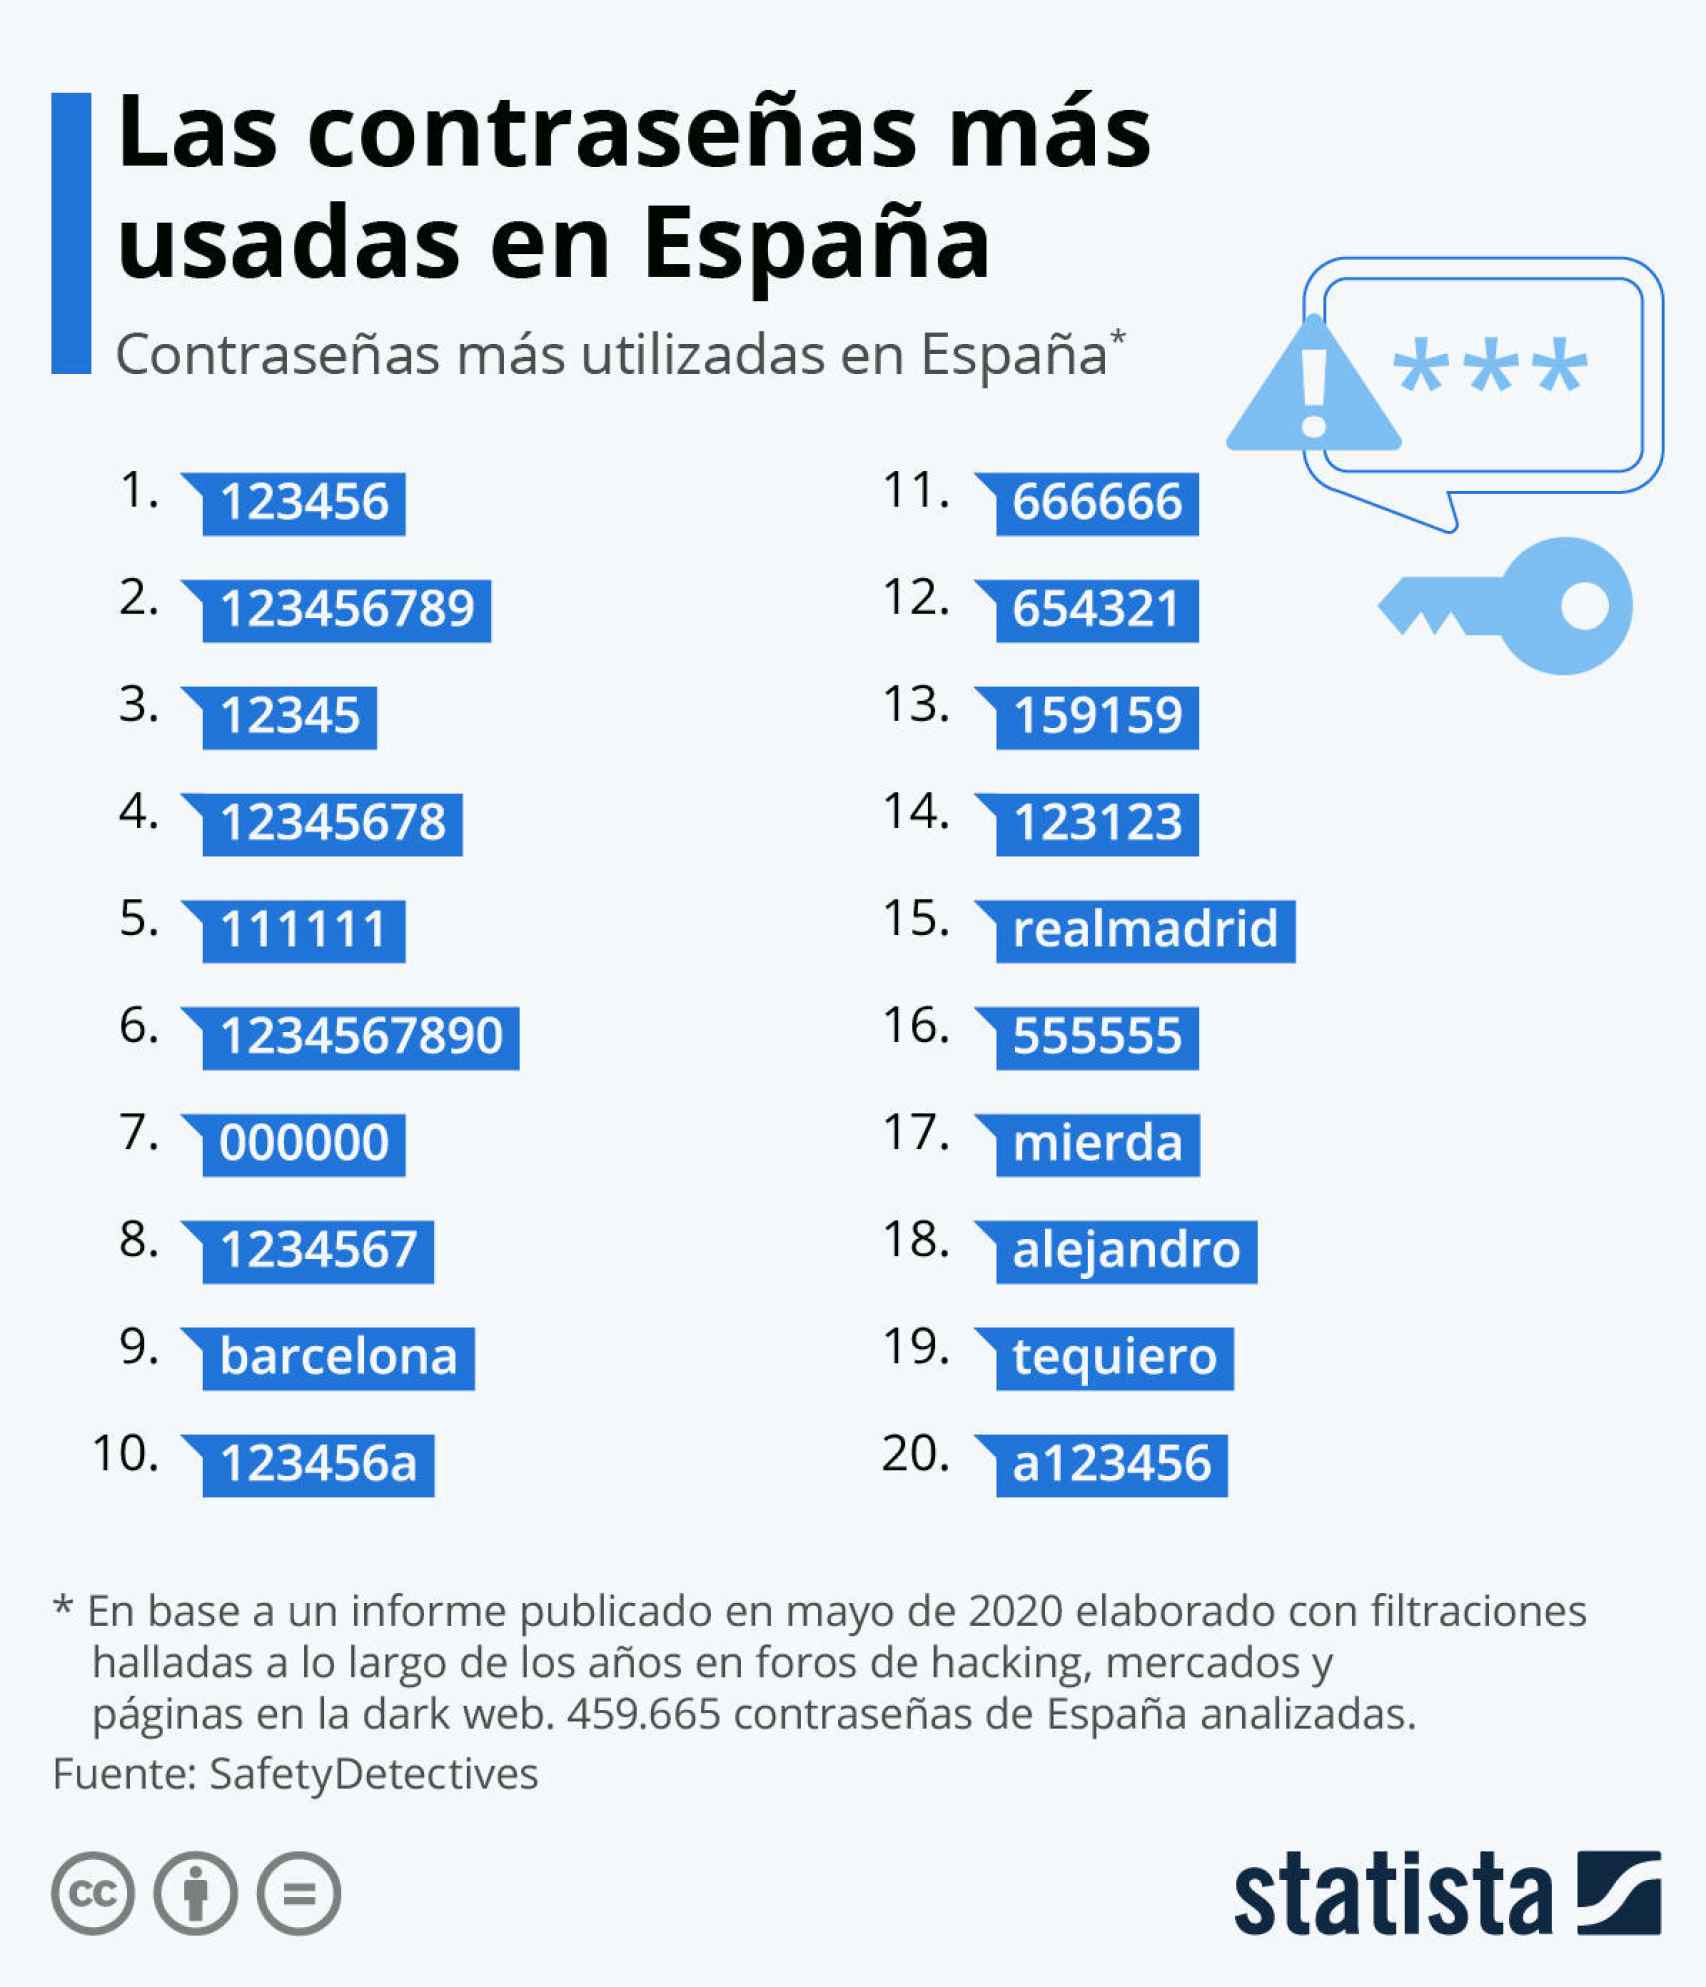 Contraseñas más usadas en España